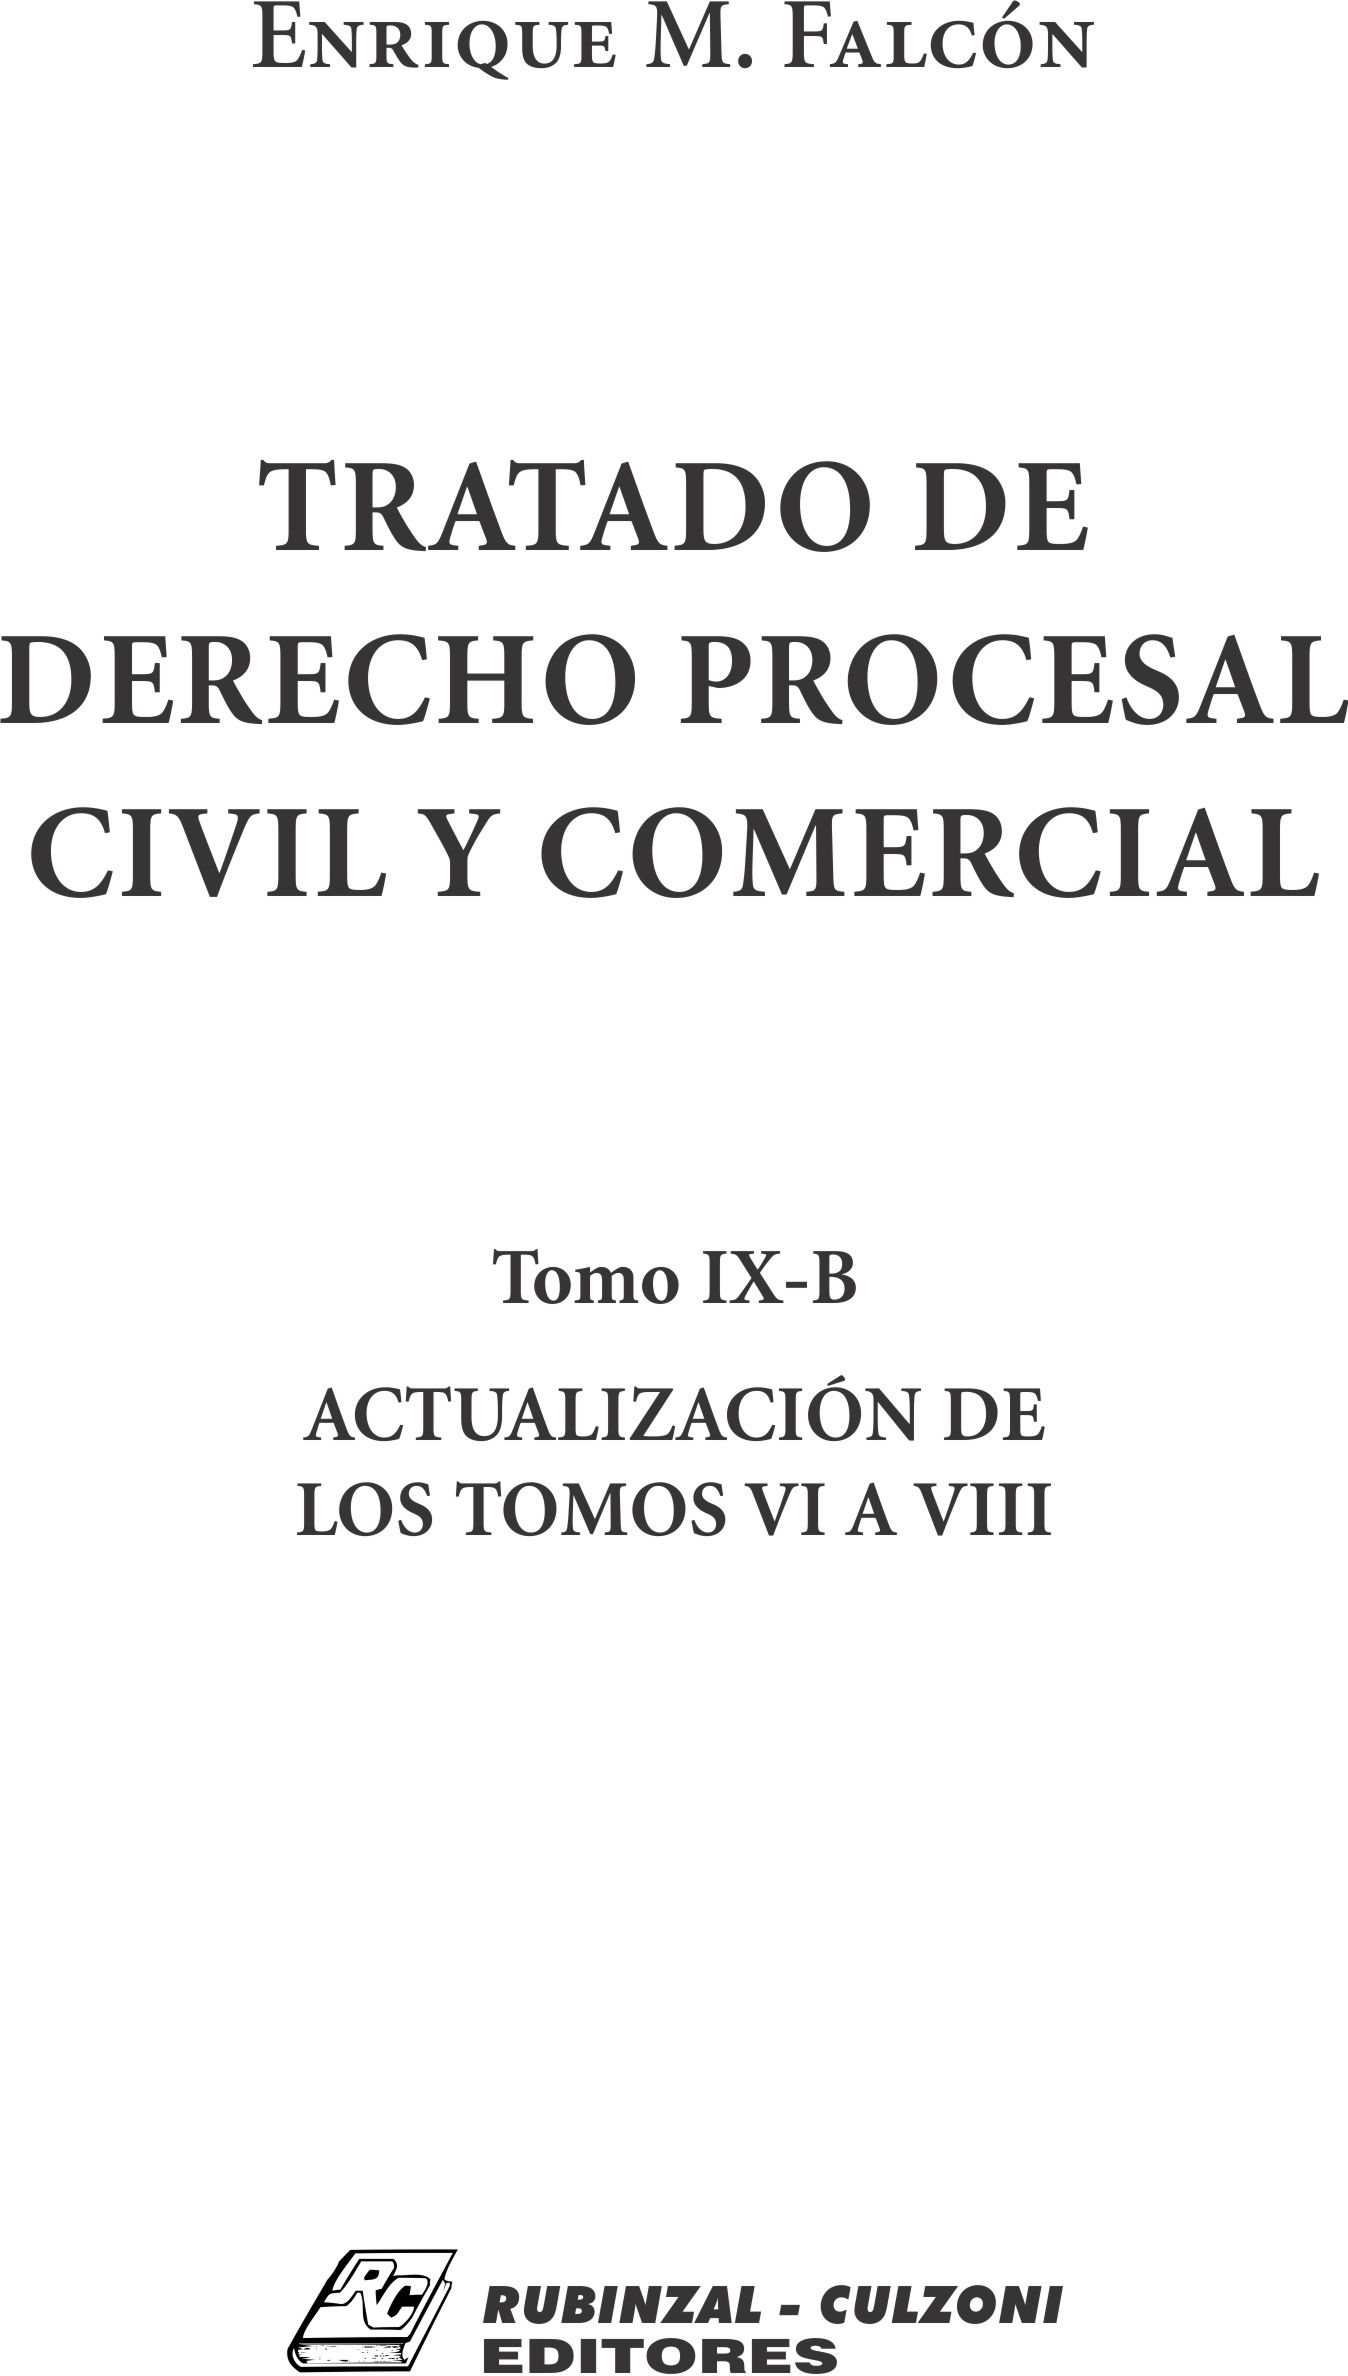 Tratado de Derecho Procesal Civil y Comercial. - Tomo IX-B. Actualización de los tomos VI a VIII.